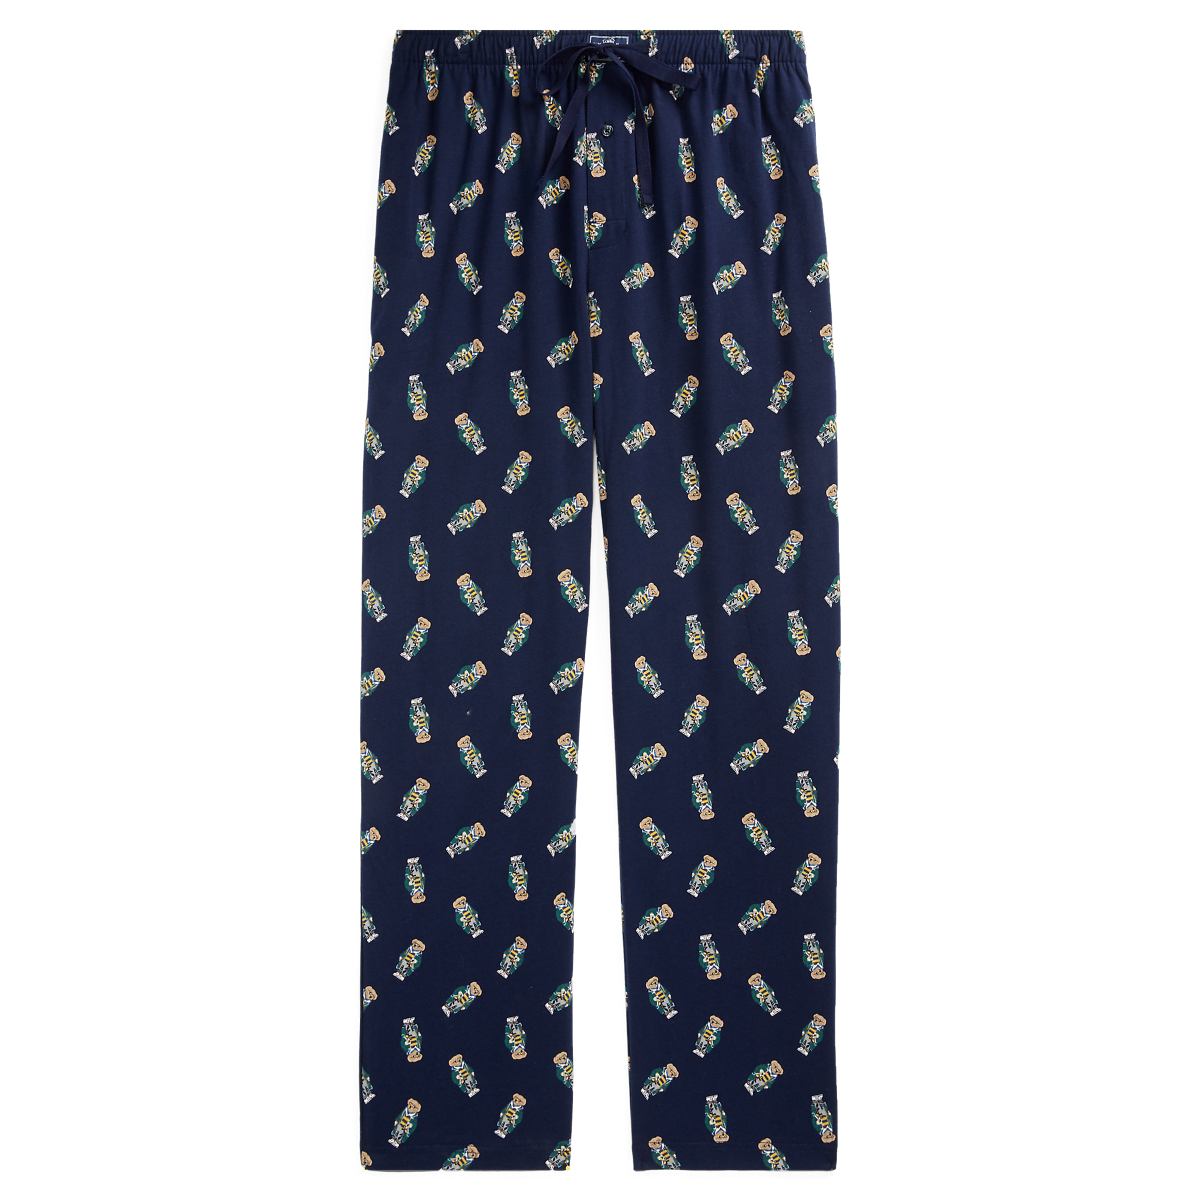 Top 88+ imagen ralph lauren men's pajama pants - Thcshoanghoatham ...